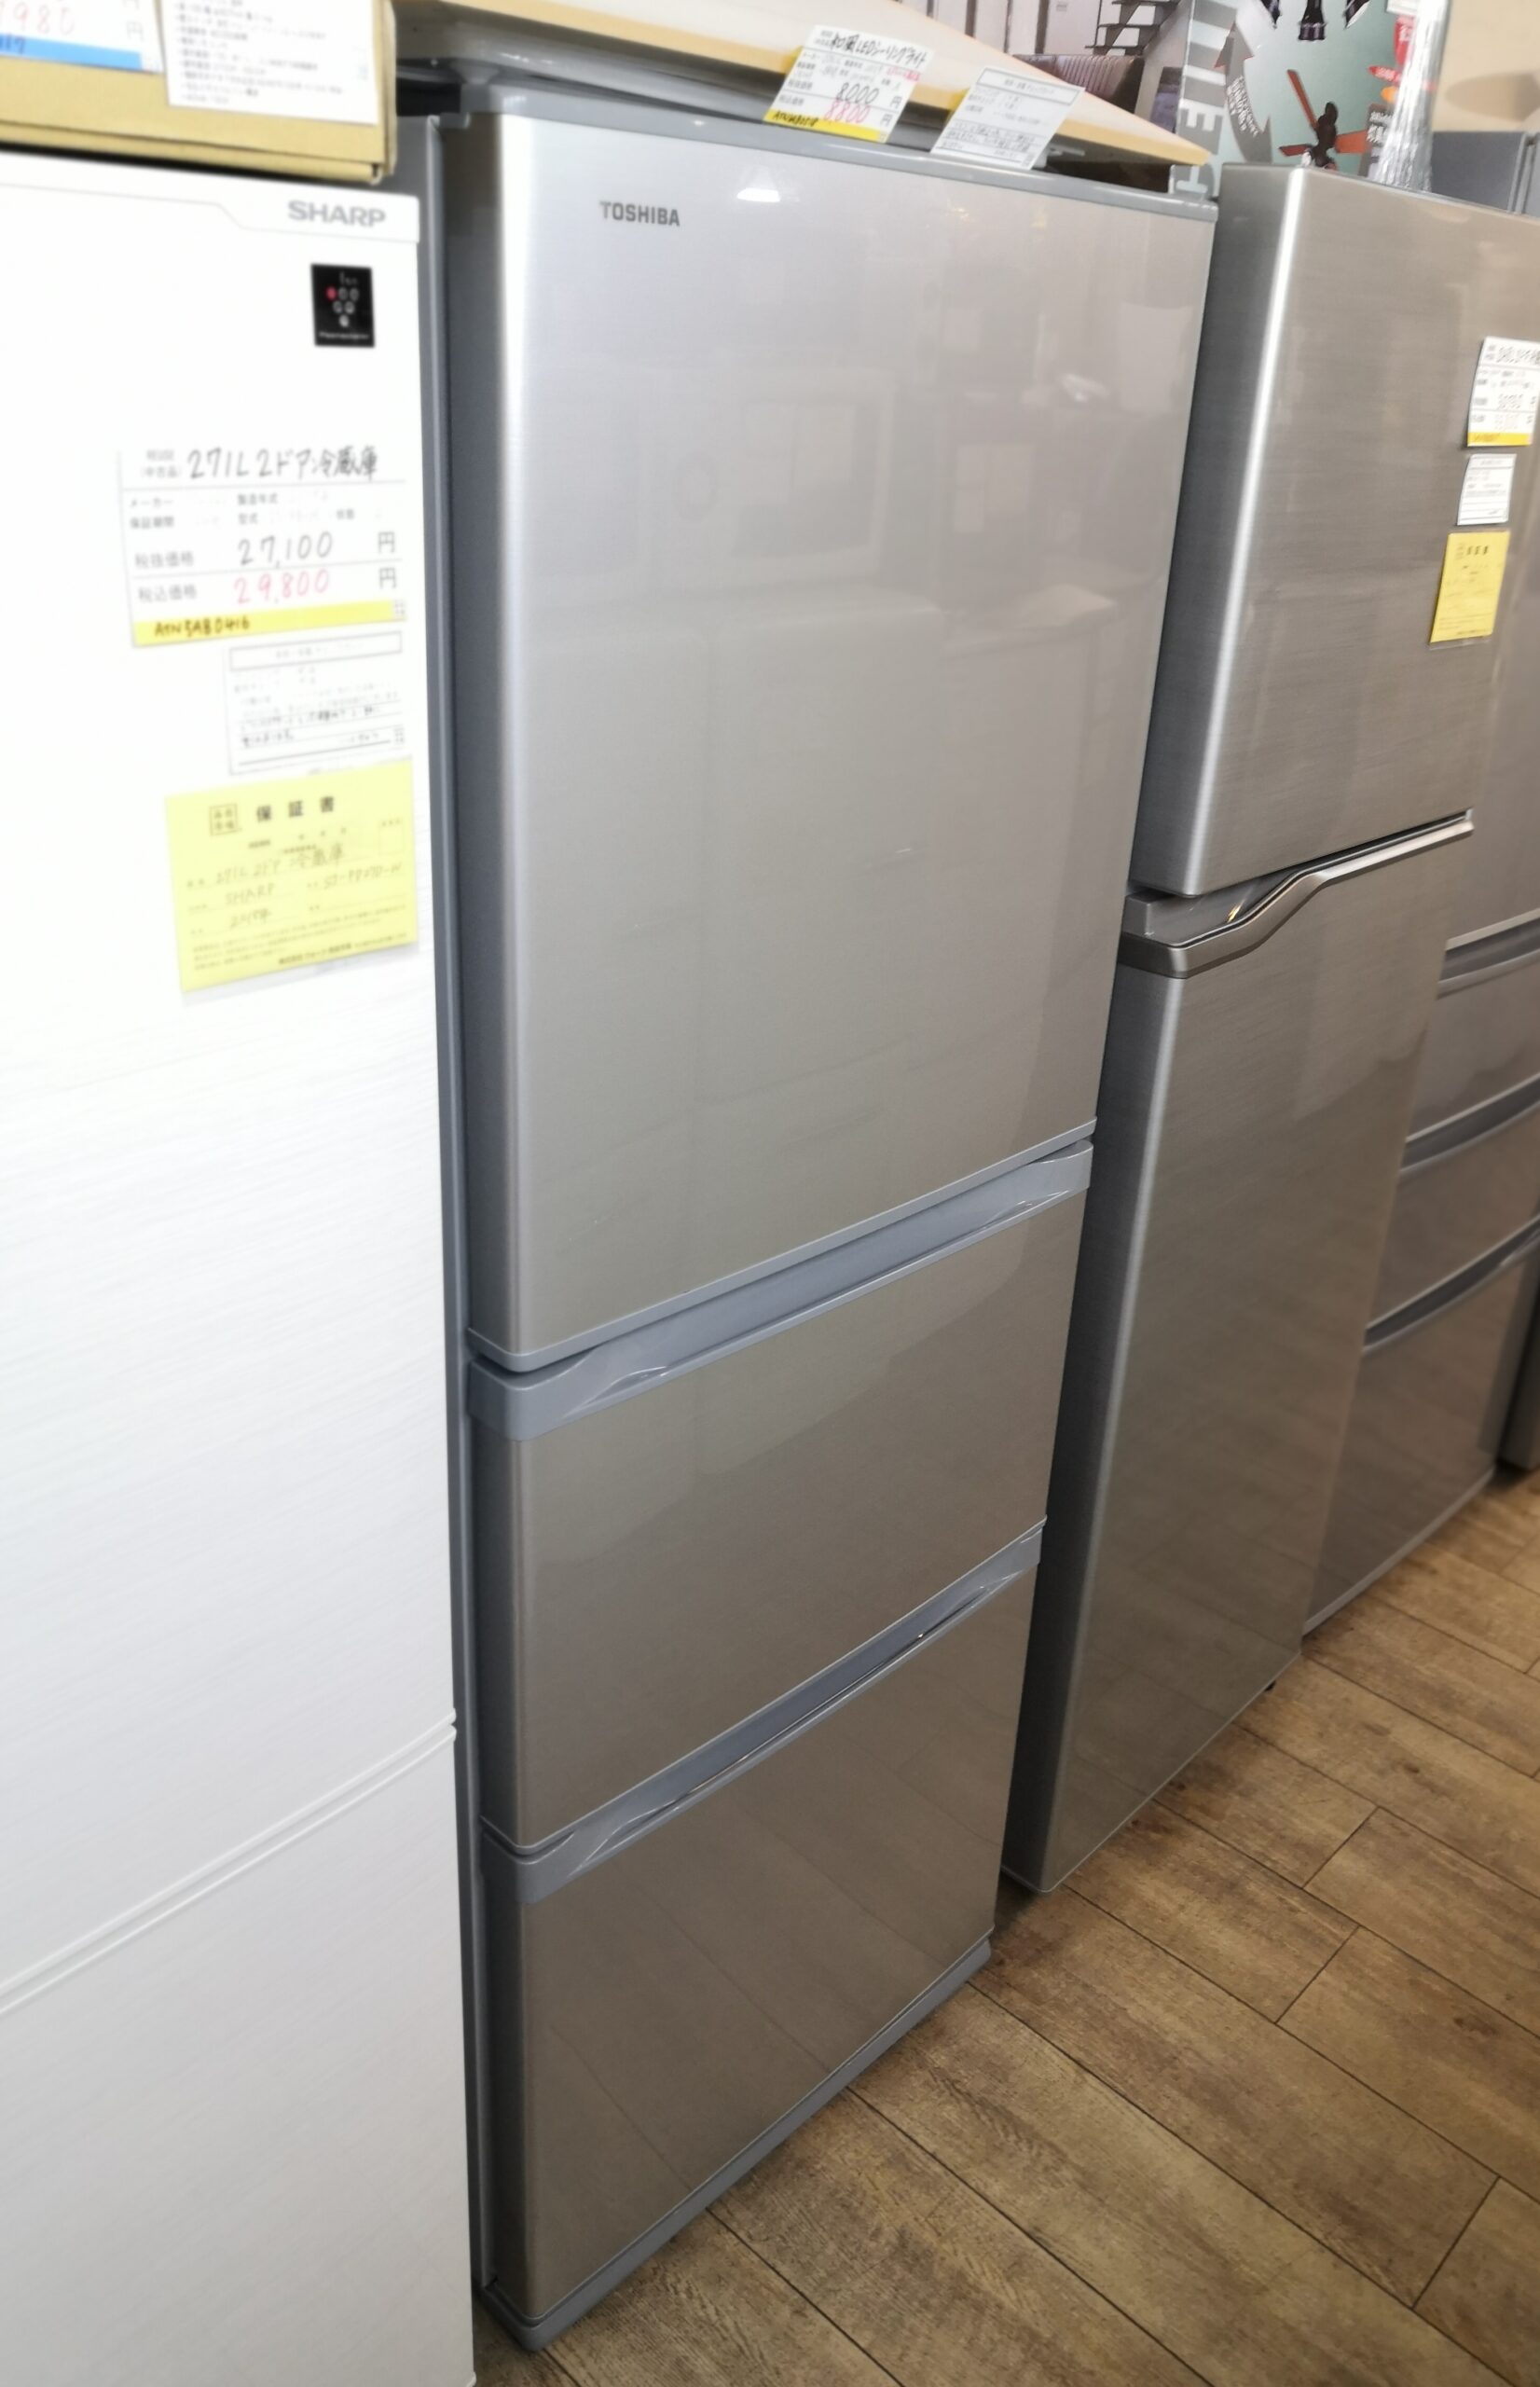 店頭販売のみ】TOSHIBAの3ドア冷蔵庫『GR-M33S』入荷しました 